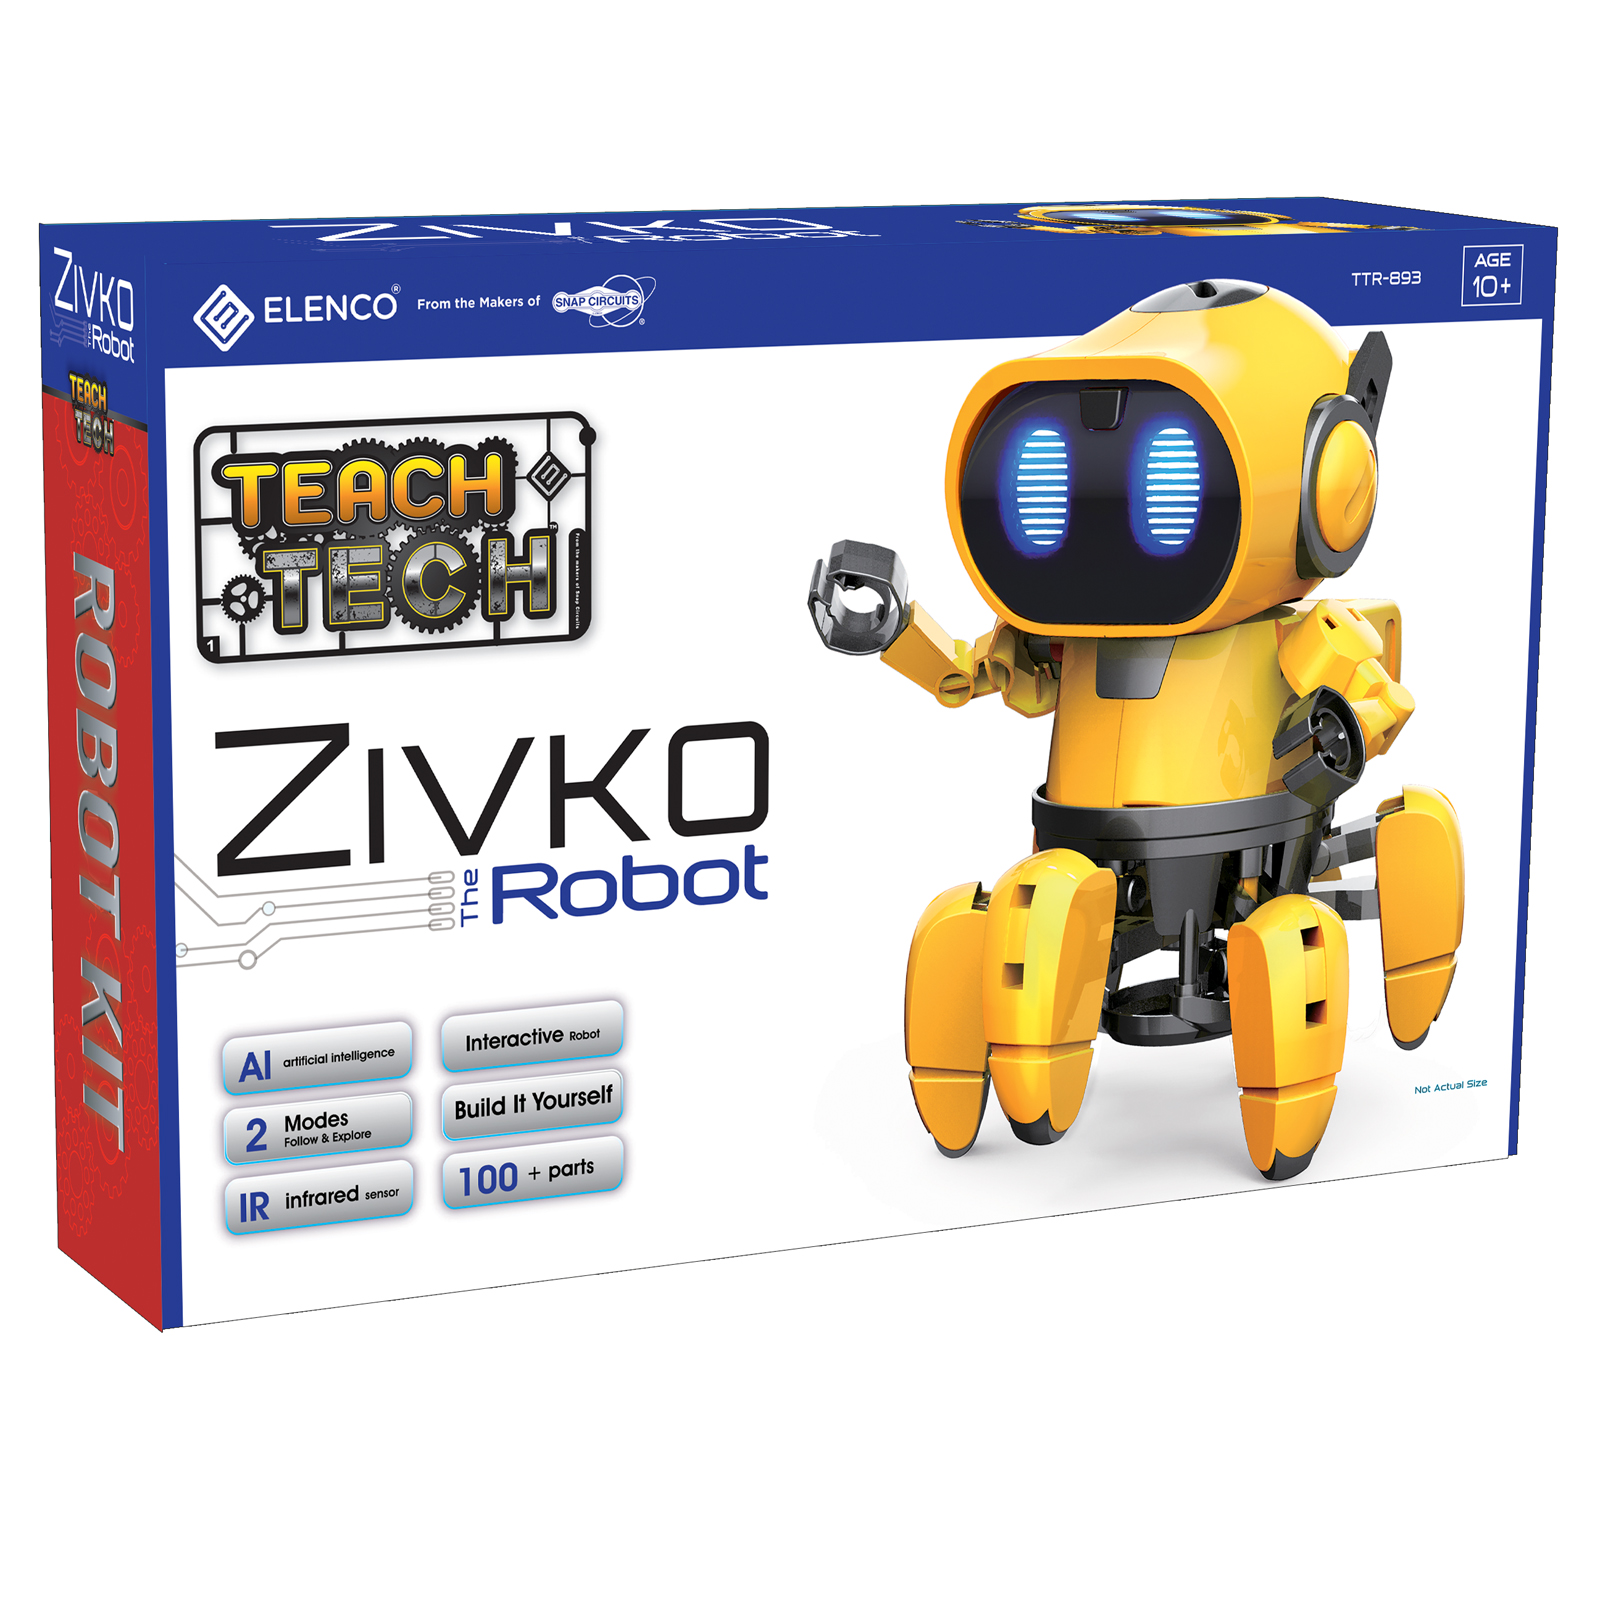 Elenco TEACH TECH Zivko the Robot Kit